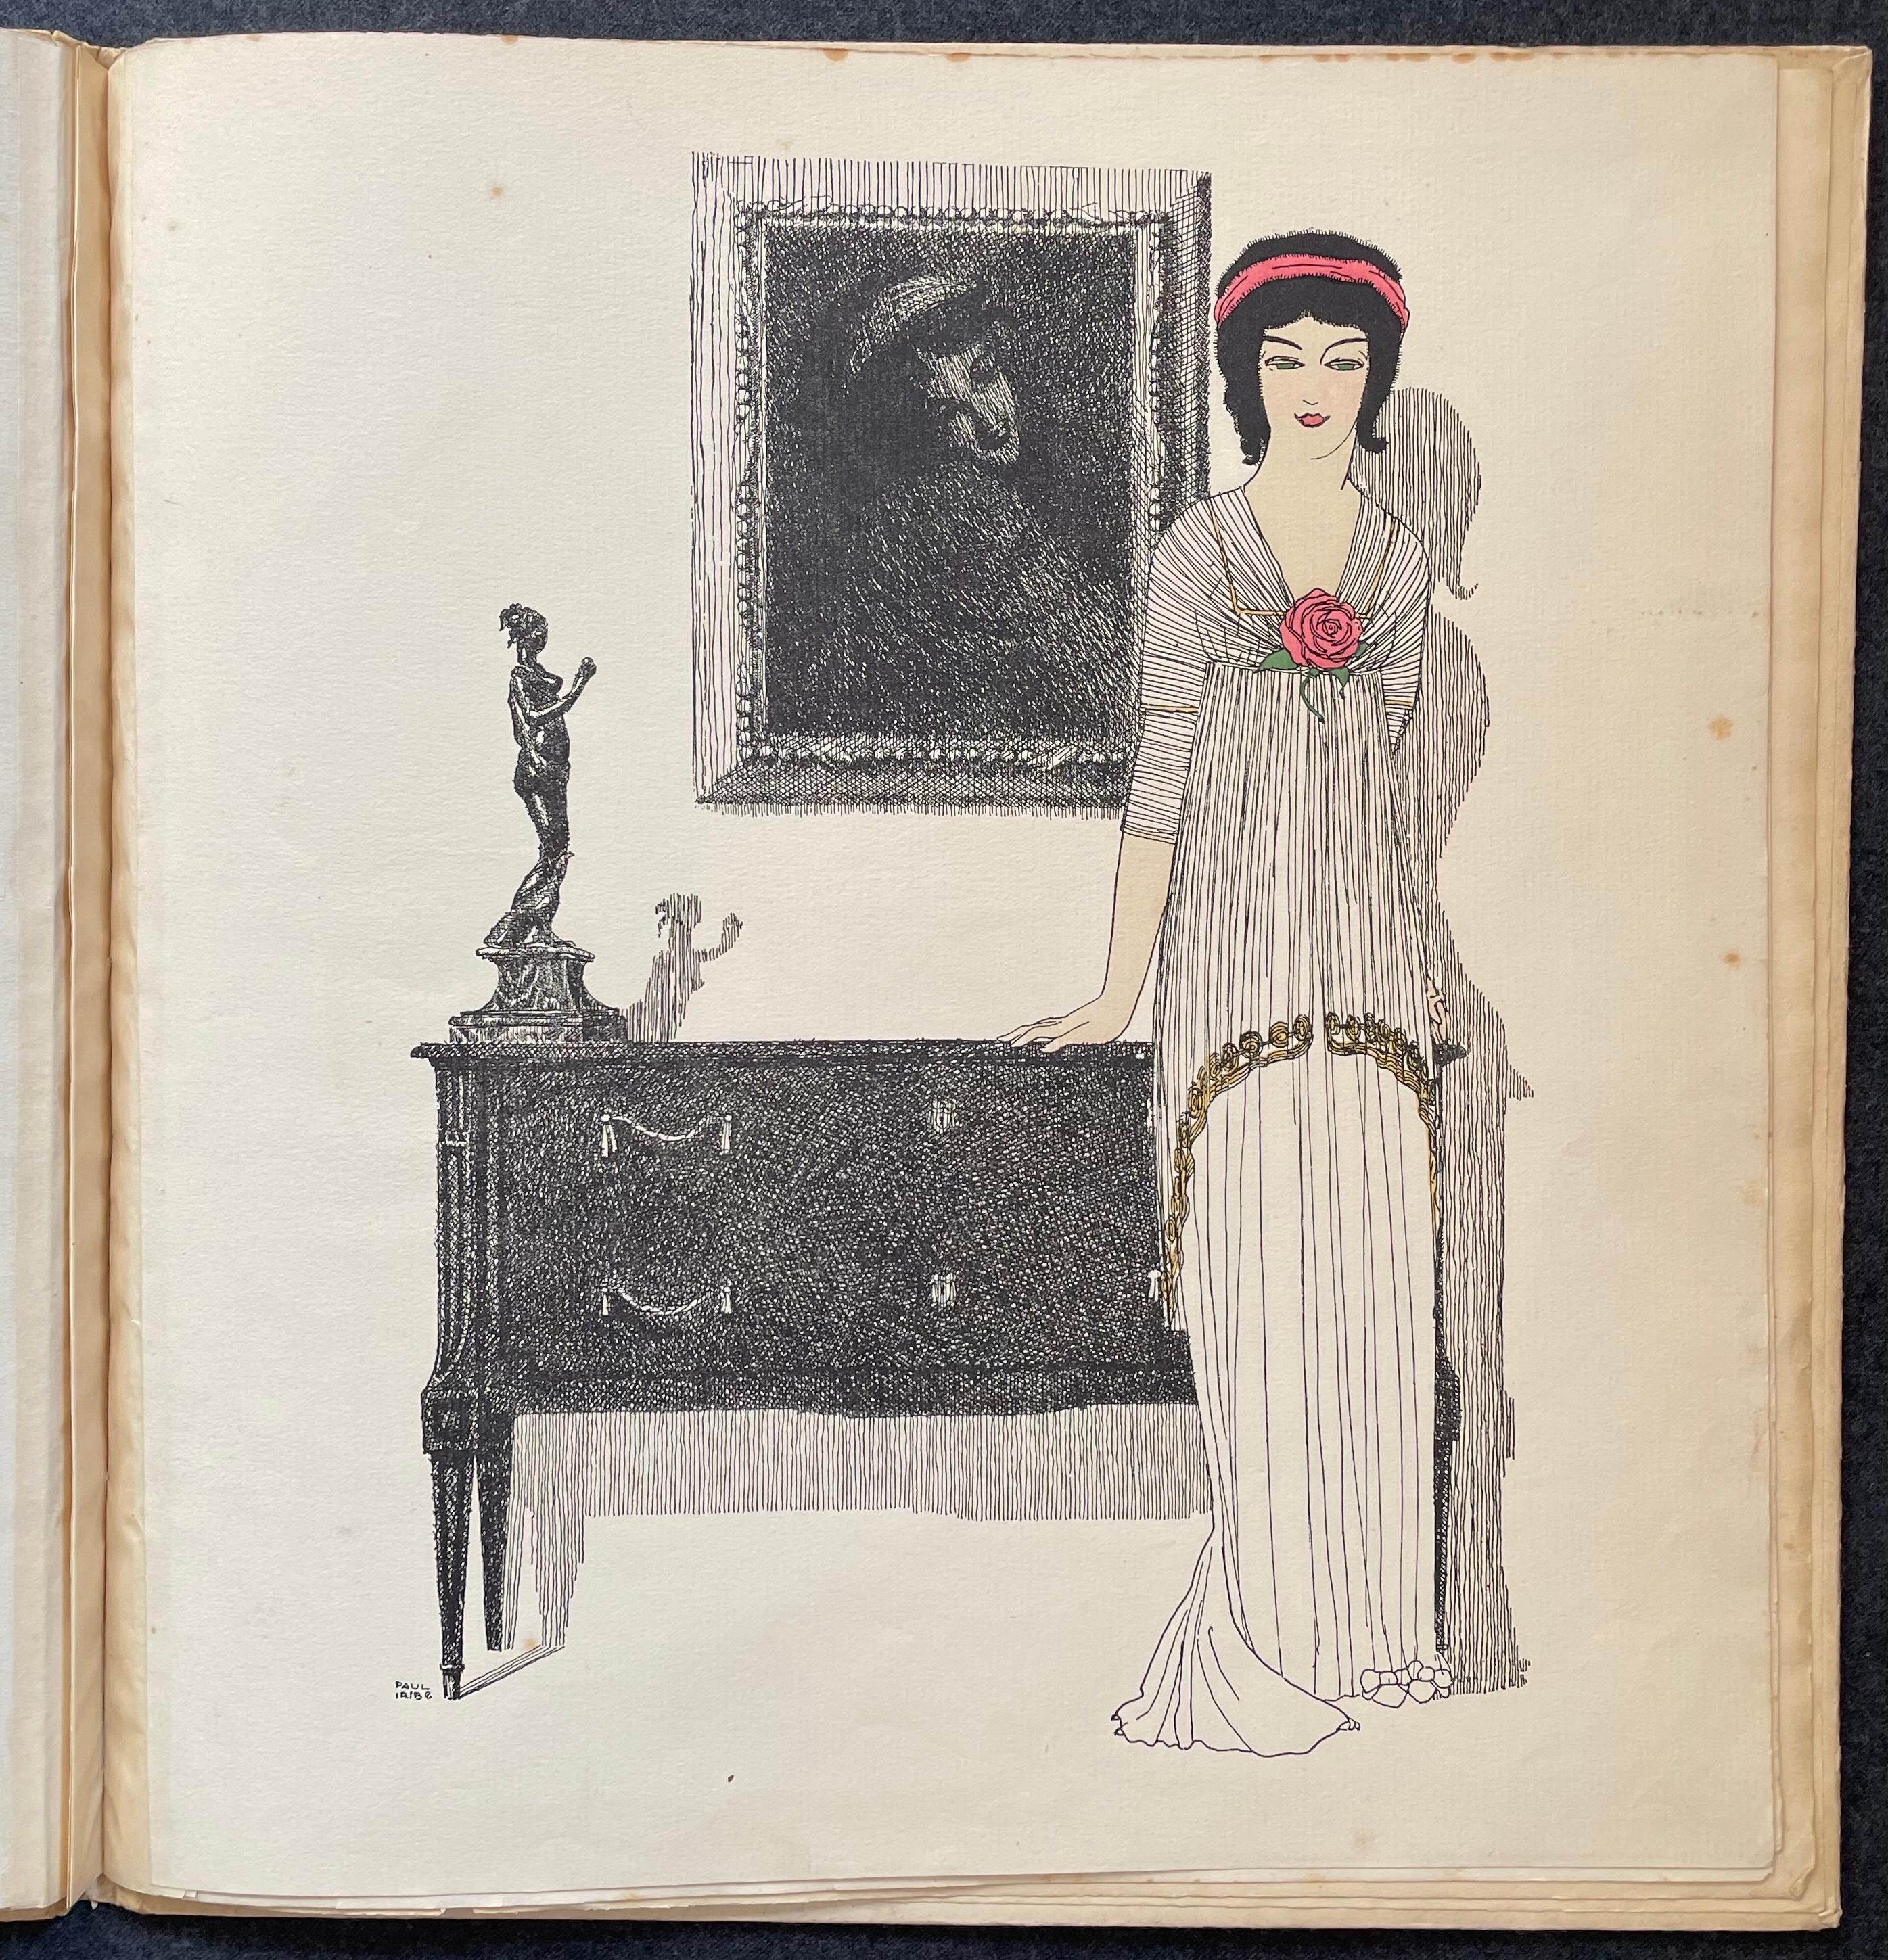 La carrière de Paul Poiret a débuté à la Belle Époque, lorsque la mode était définie par des corsets emprisonnants, des coupes restrictives et des couleurs éthérées. Ouvrant sa propre maison de couture en 1904, il a banni le corset, mis l'accent sur